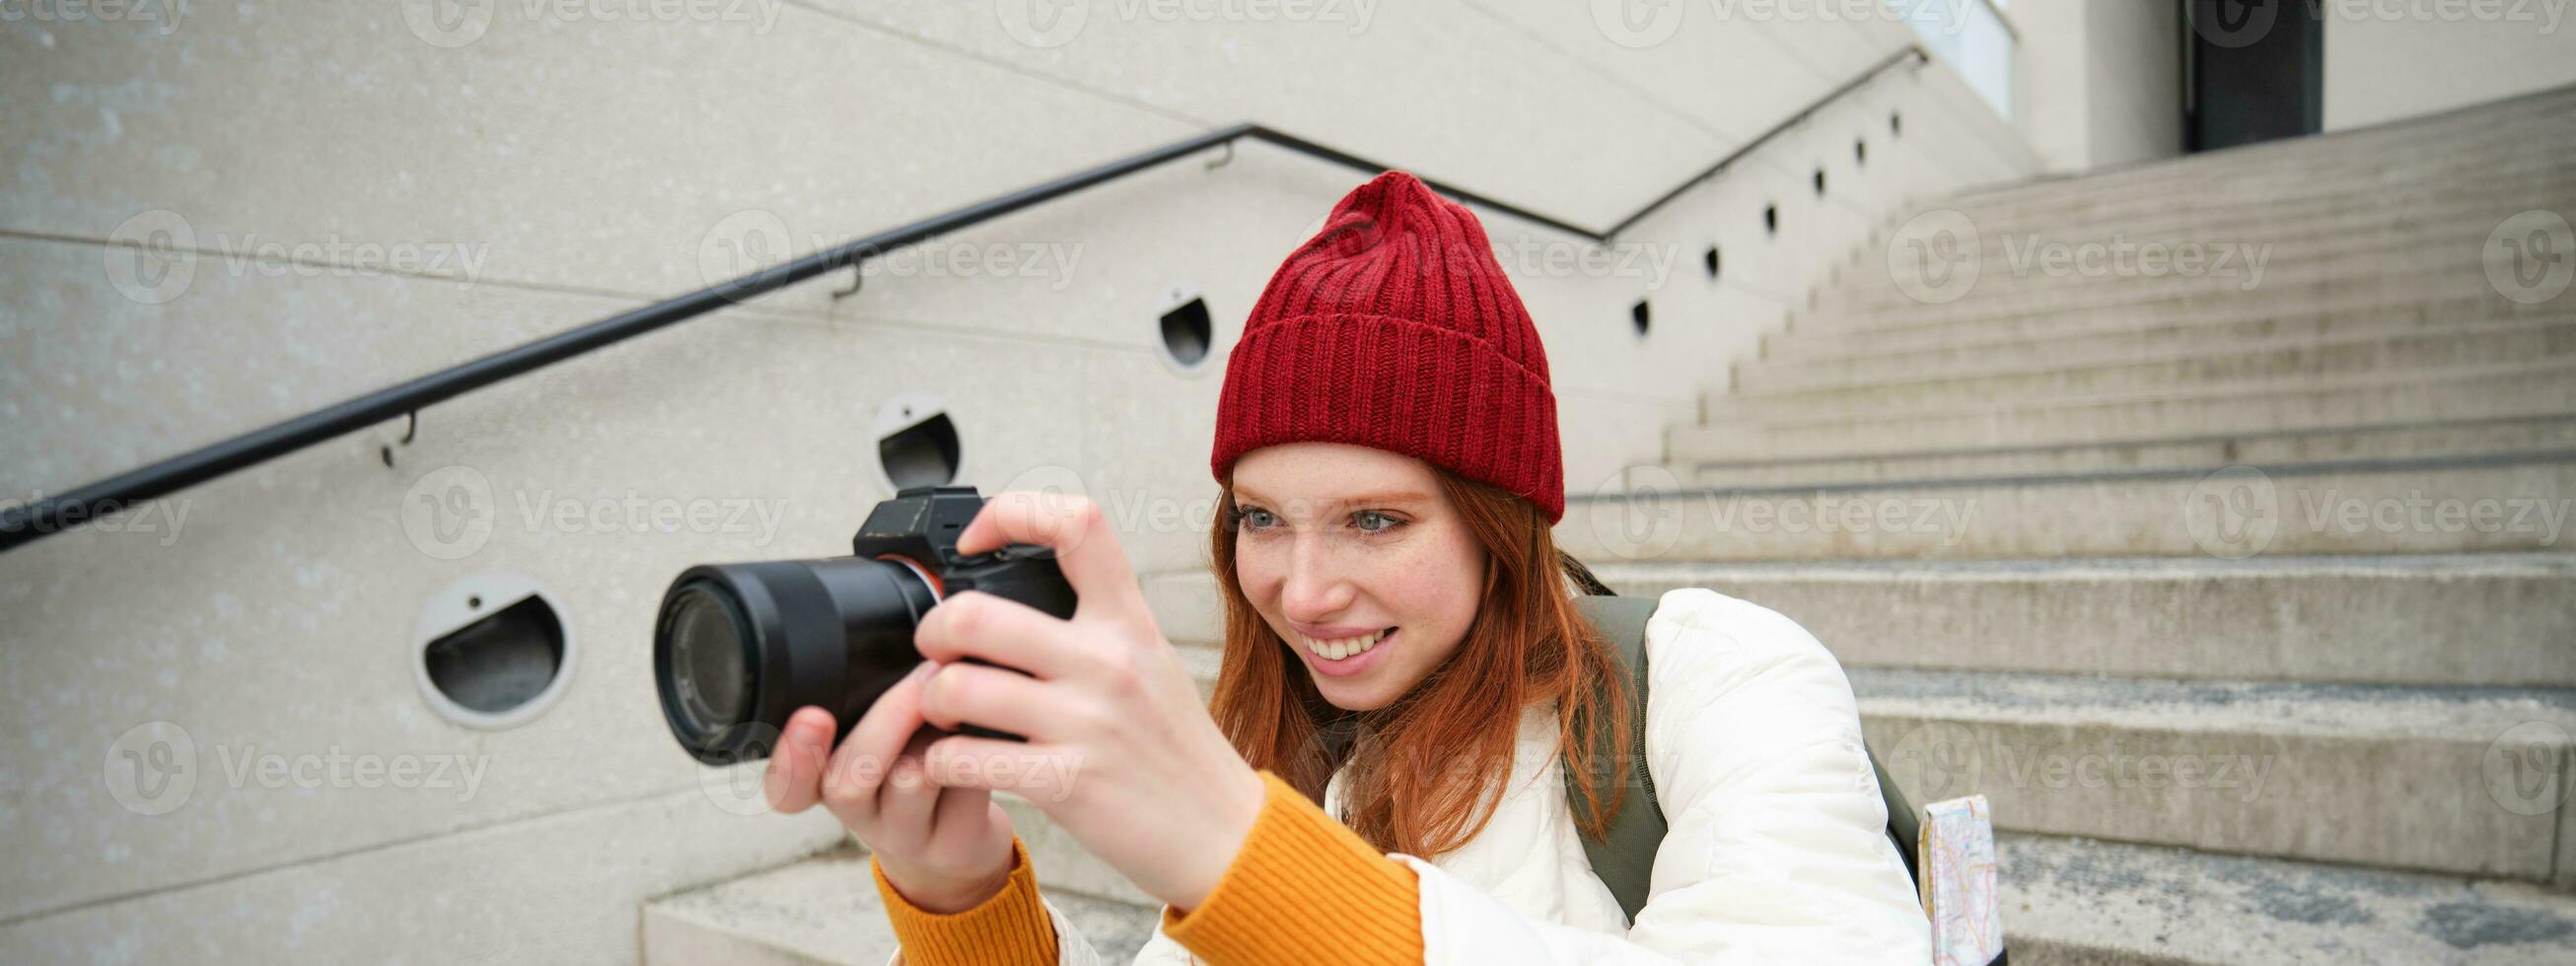 urbano personas y estilo de vida. contento pelirrojo mujer toma fotos, participación profesional digital cámara, fotografiando en calles foto